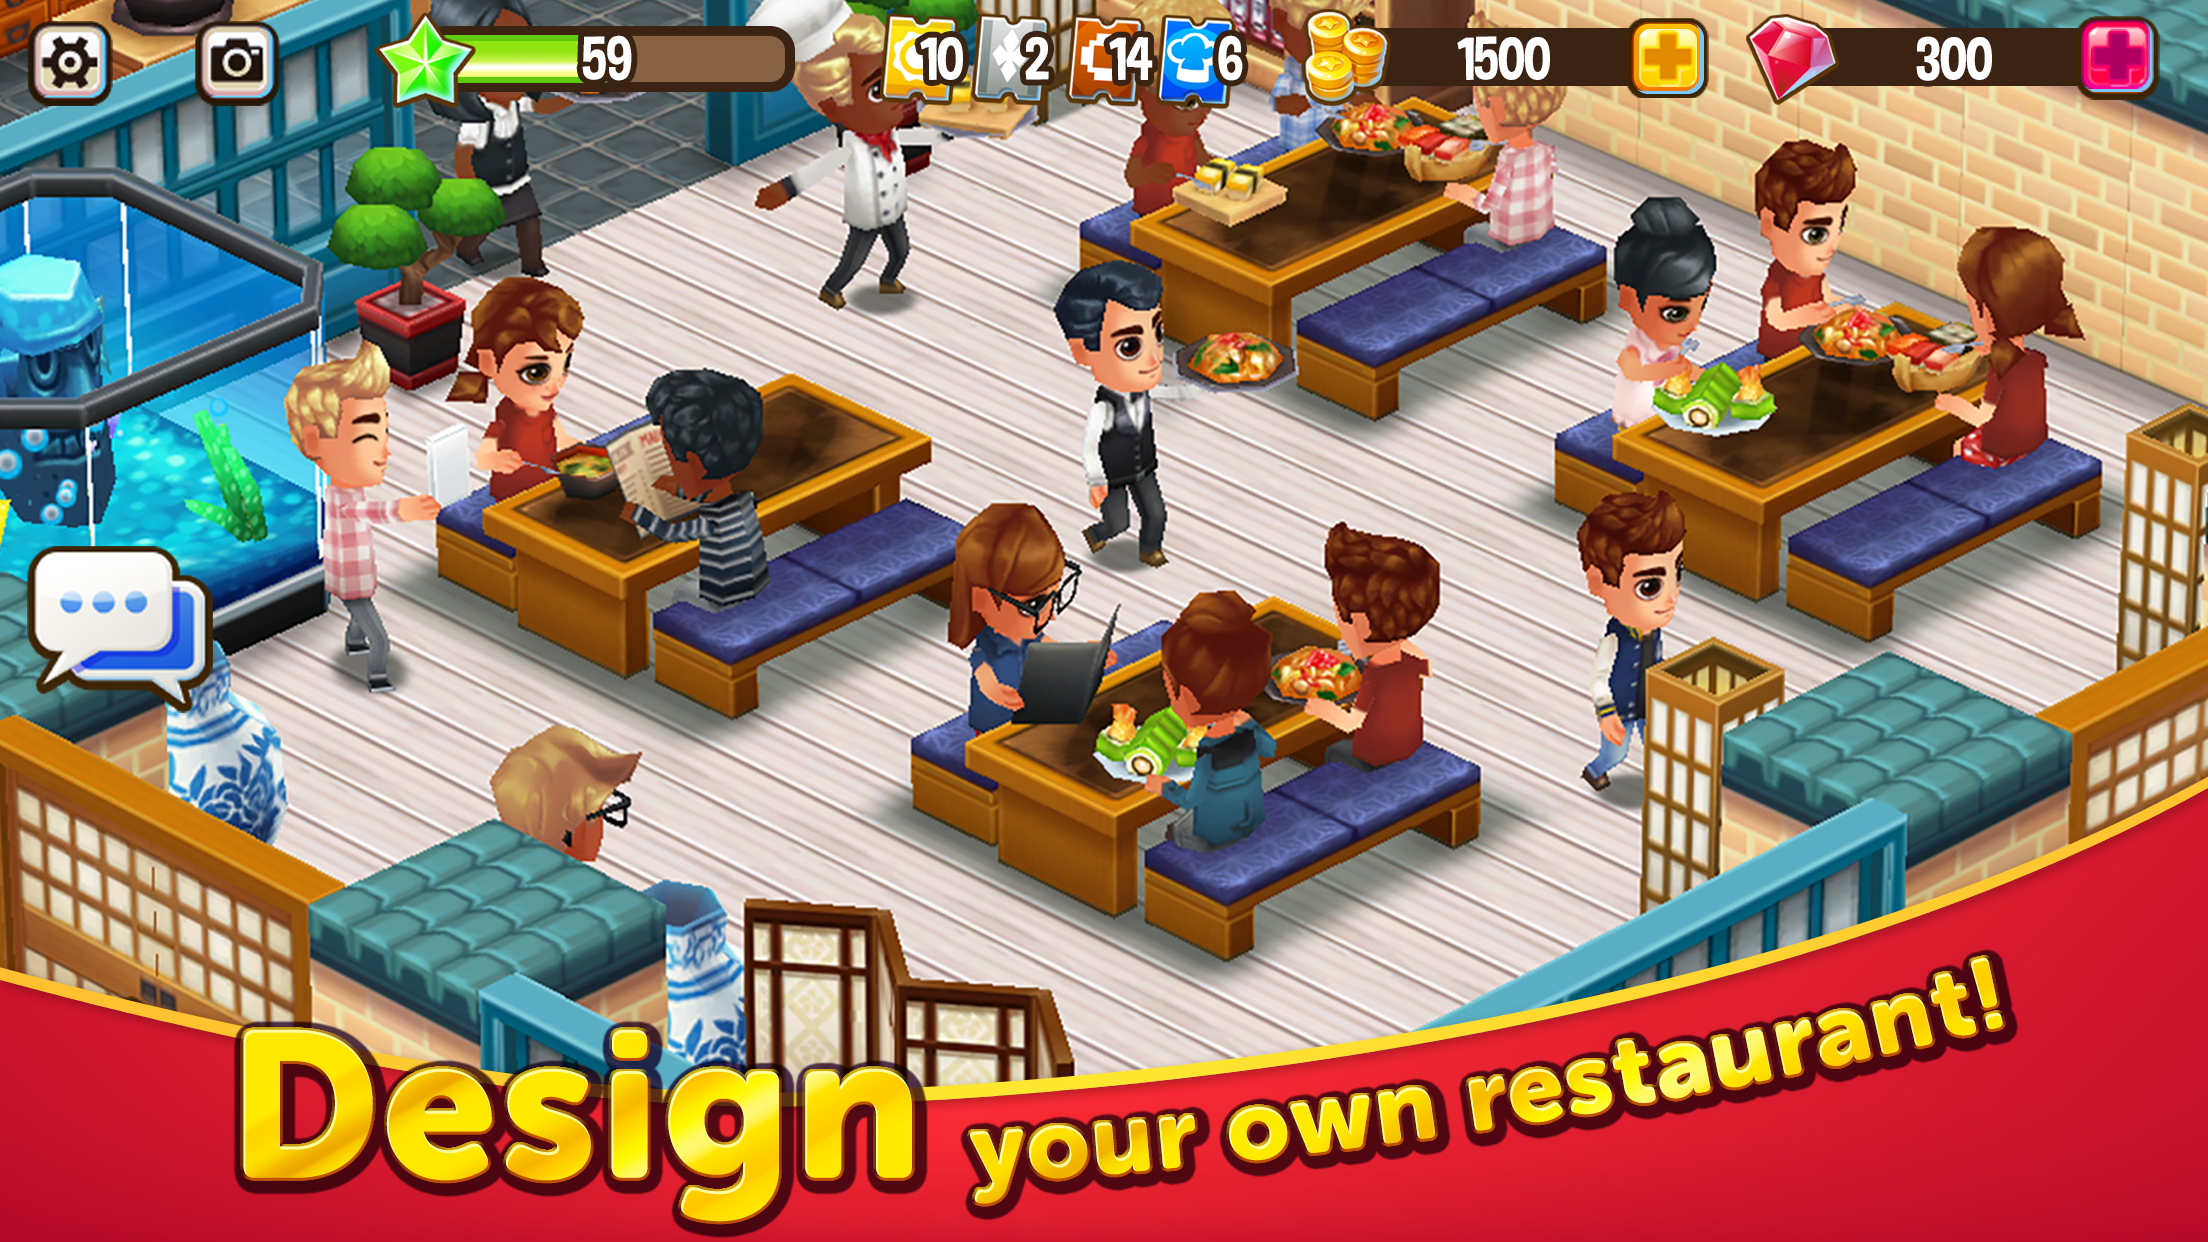 Screenshot 1 of Food Street - Game Restoran 0.73.3